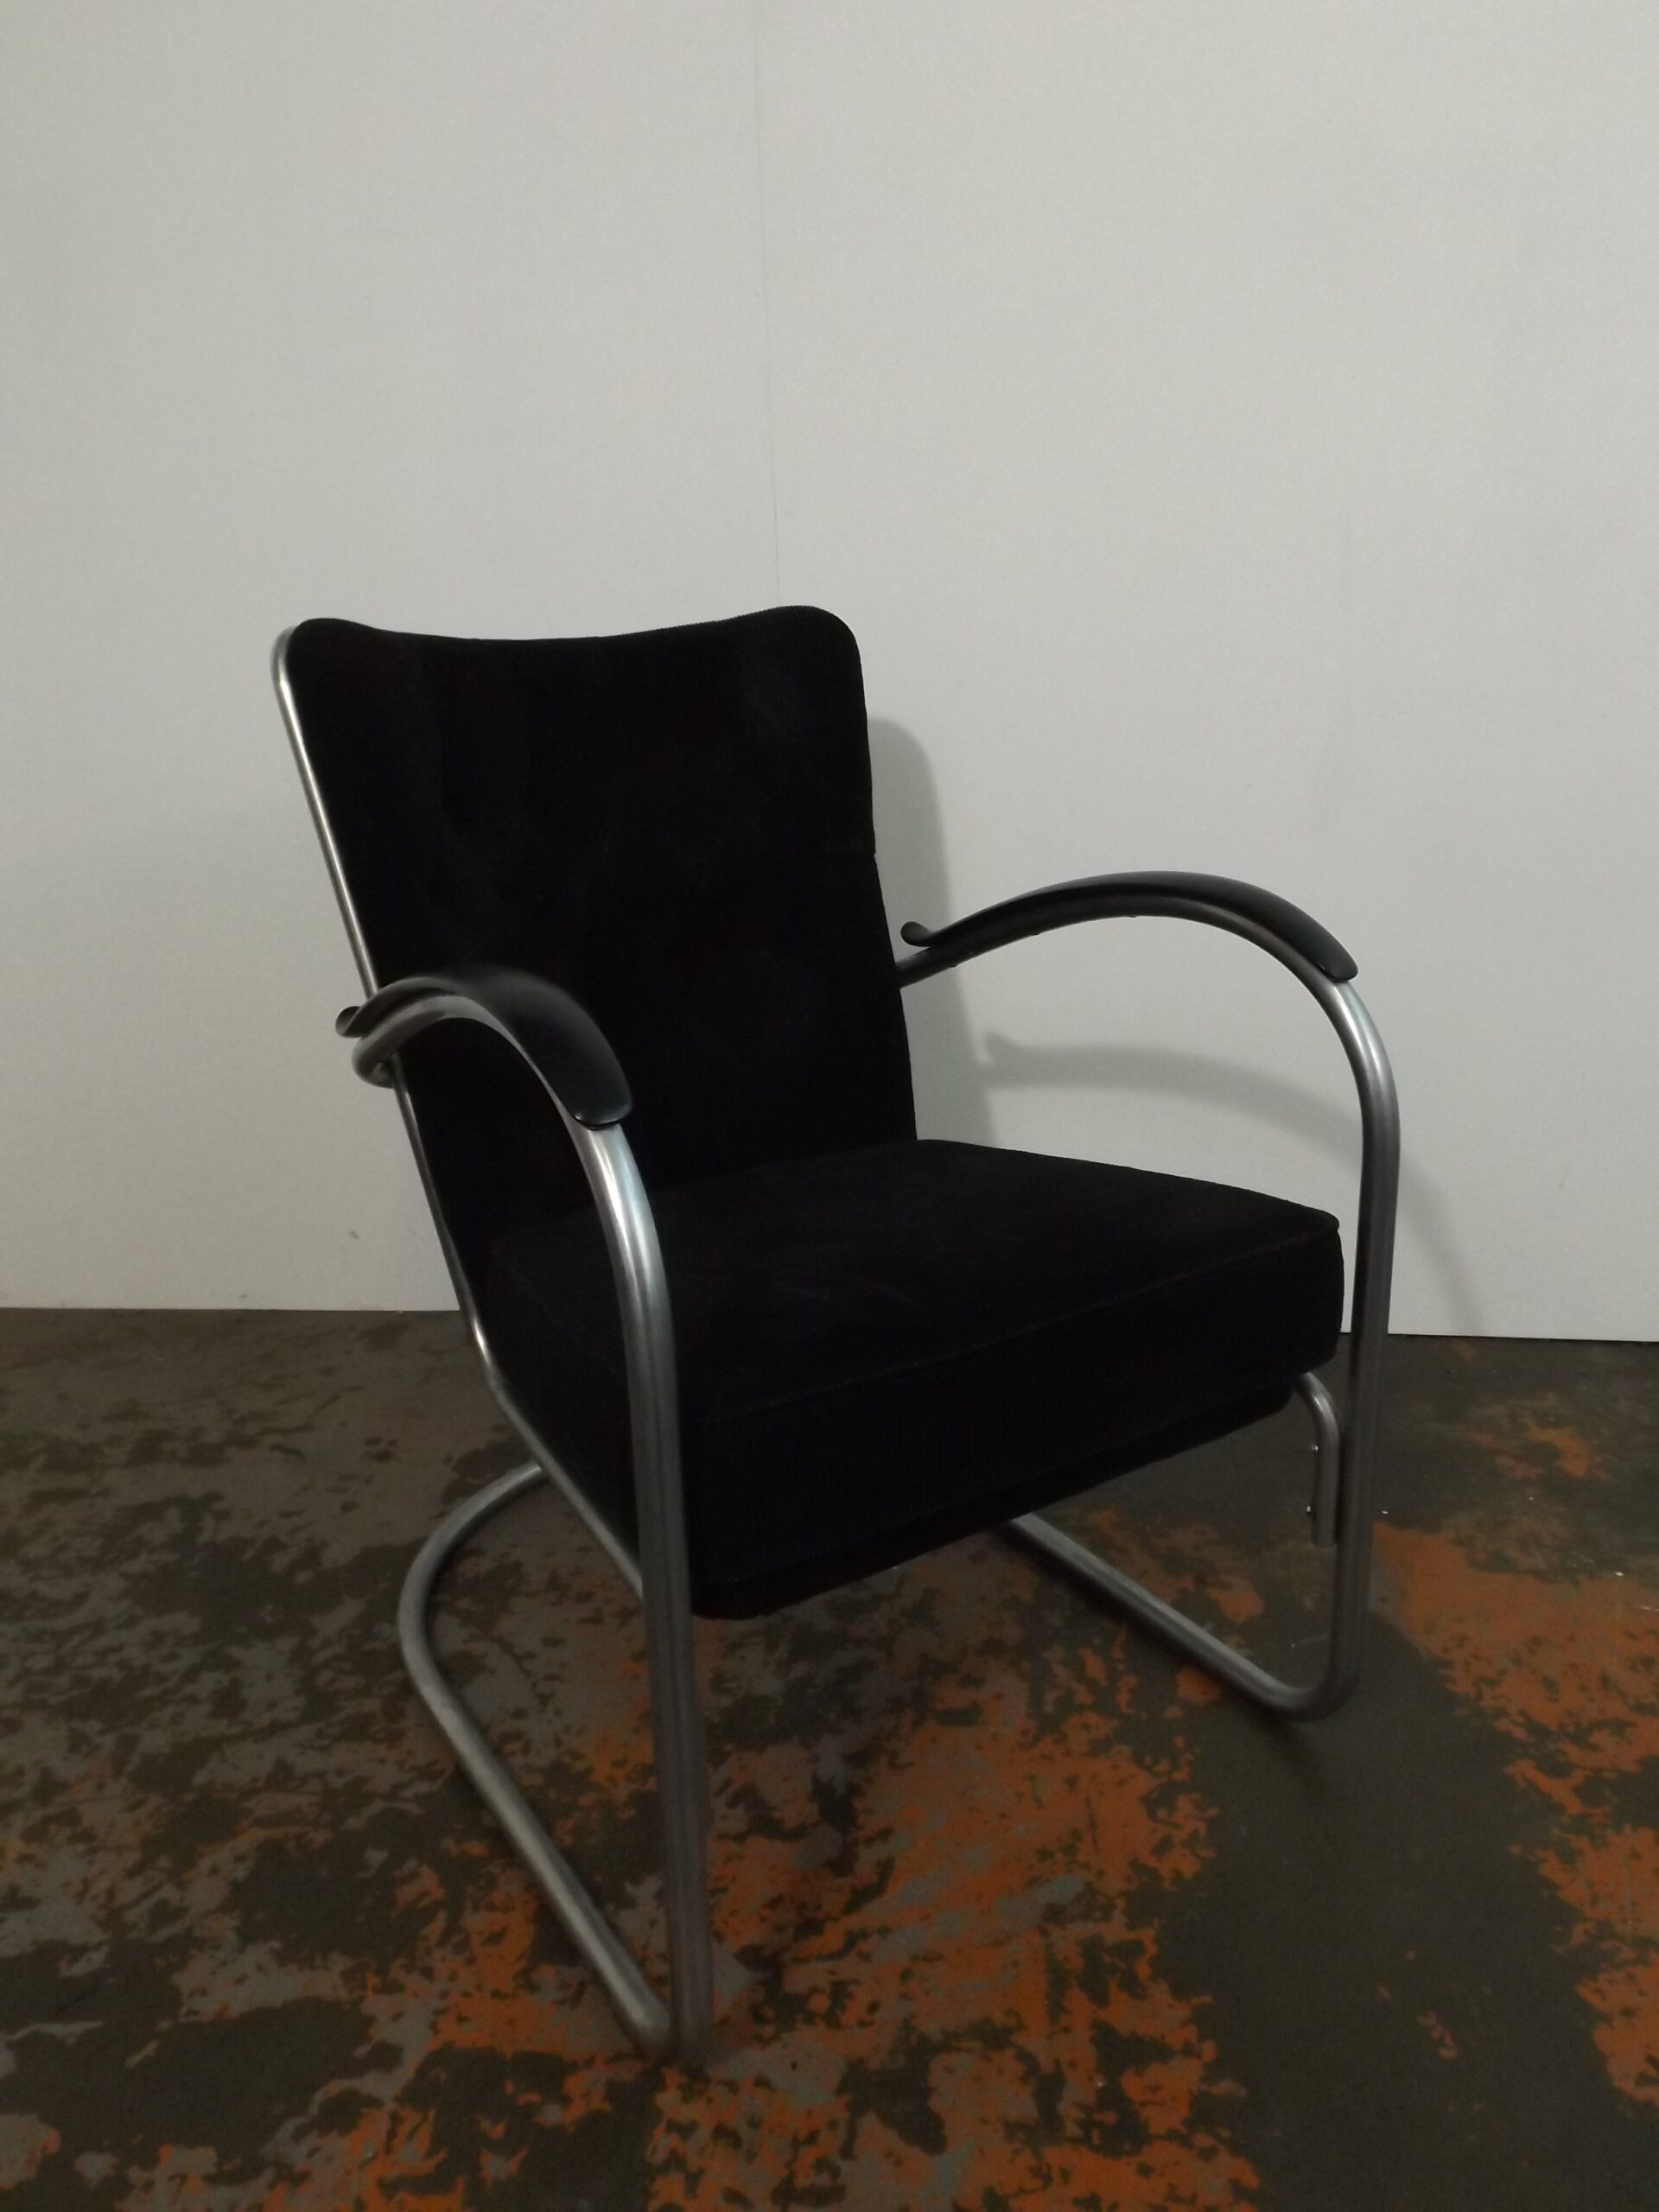 Gipsen chair 412 ( original made in 1947)